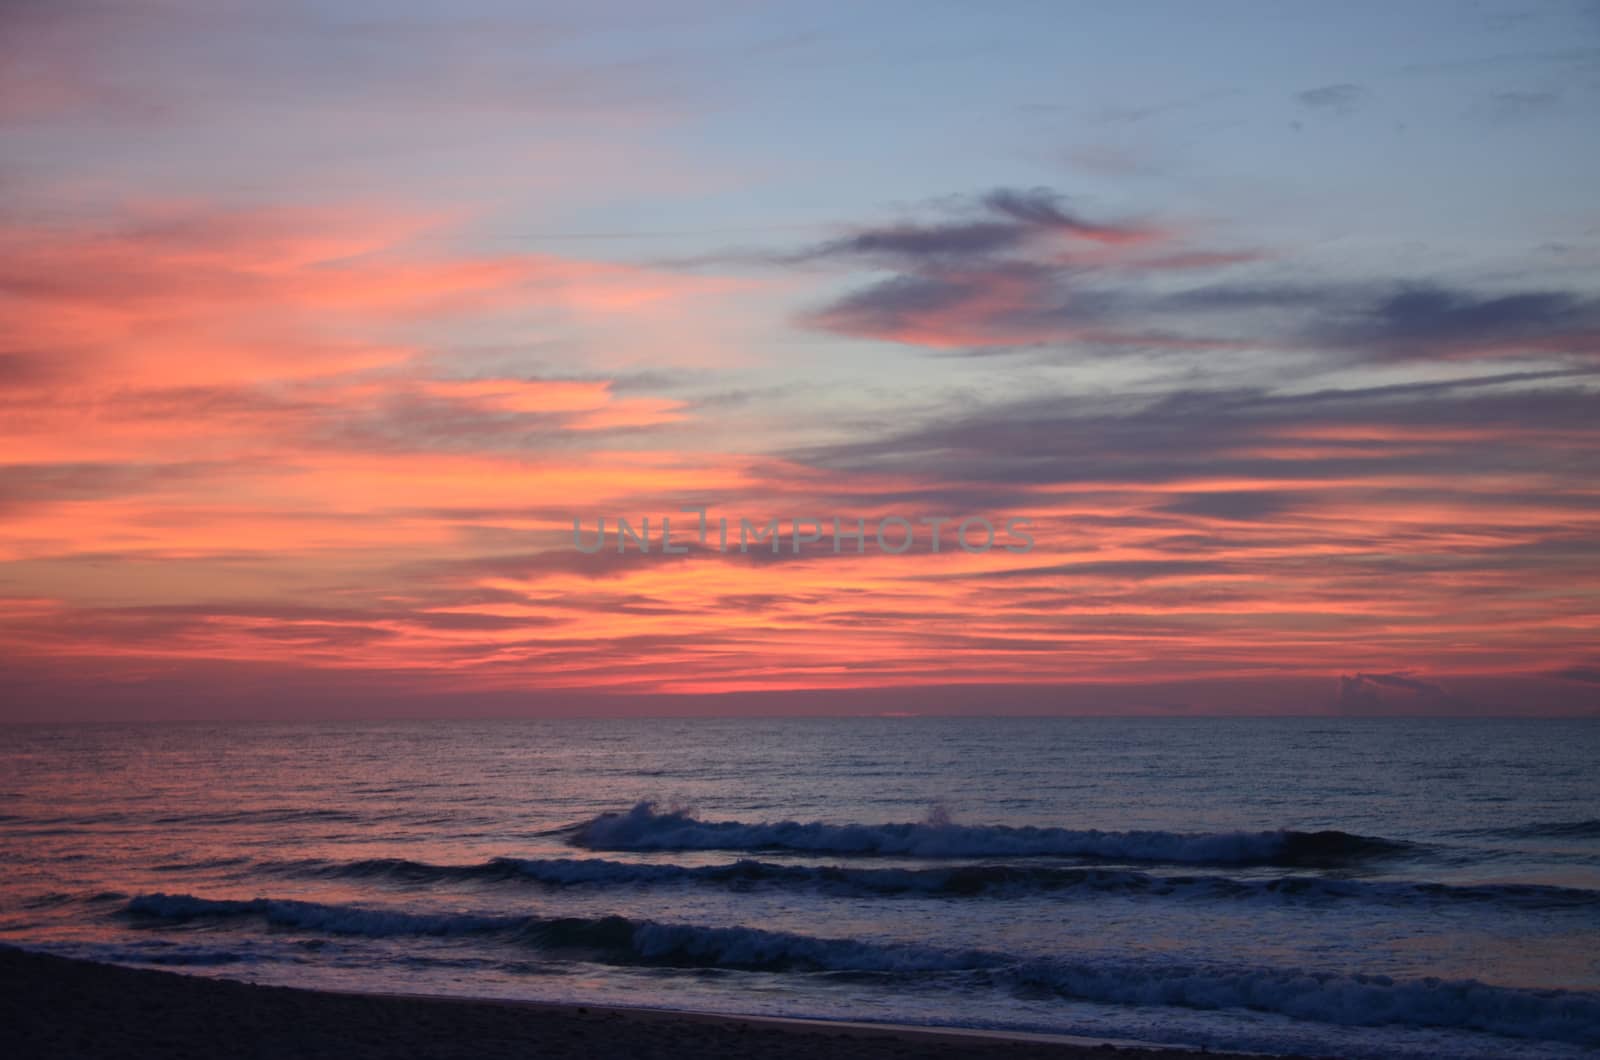 Sunrise at Kure Beach North Carolina on a warm summer morning.